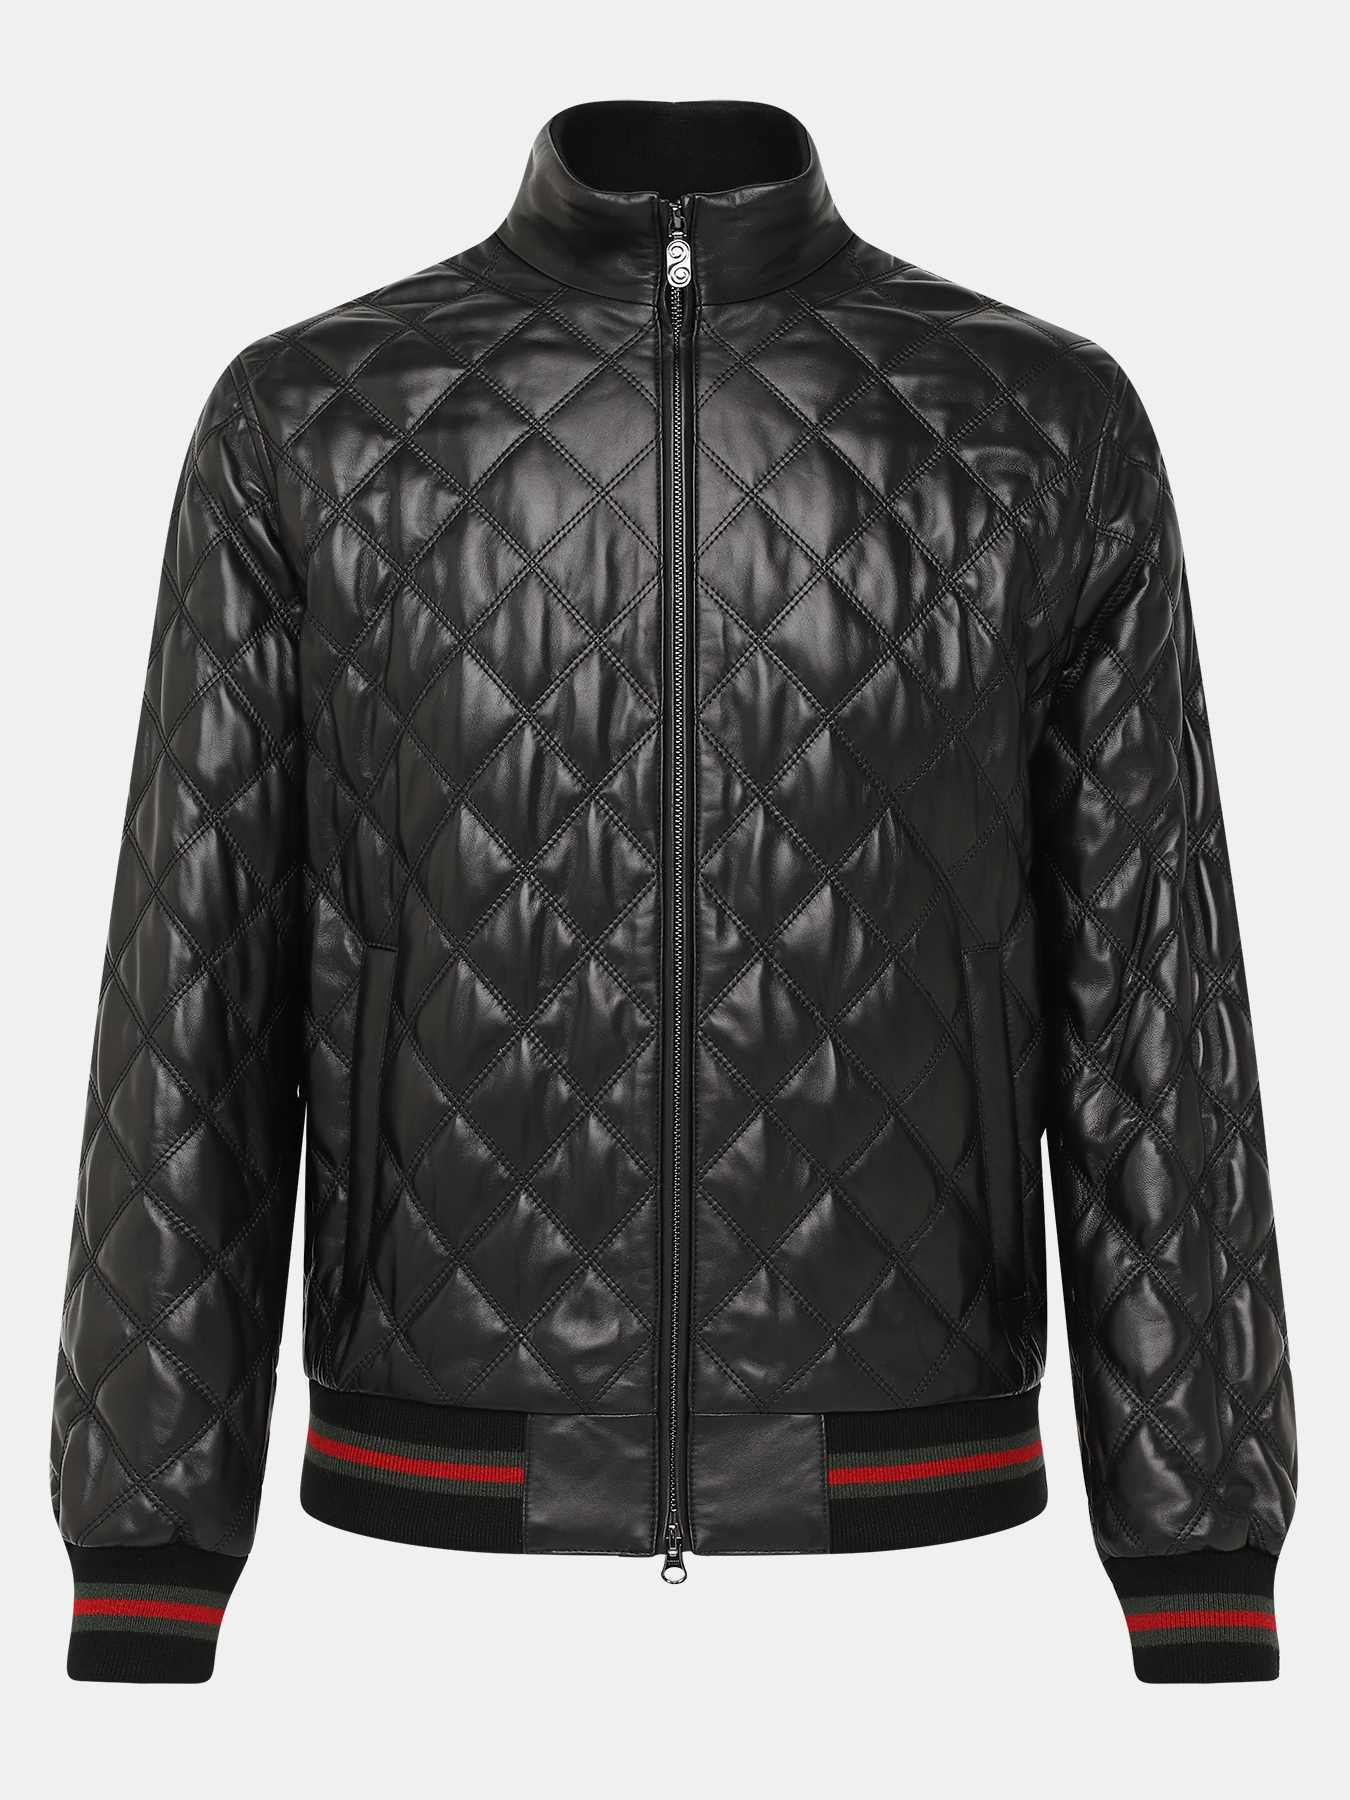 Кожаная куртка Alessandro Manzoni 390971-030, цвет черный, размер 58 - фото 1